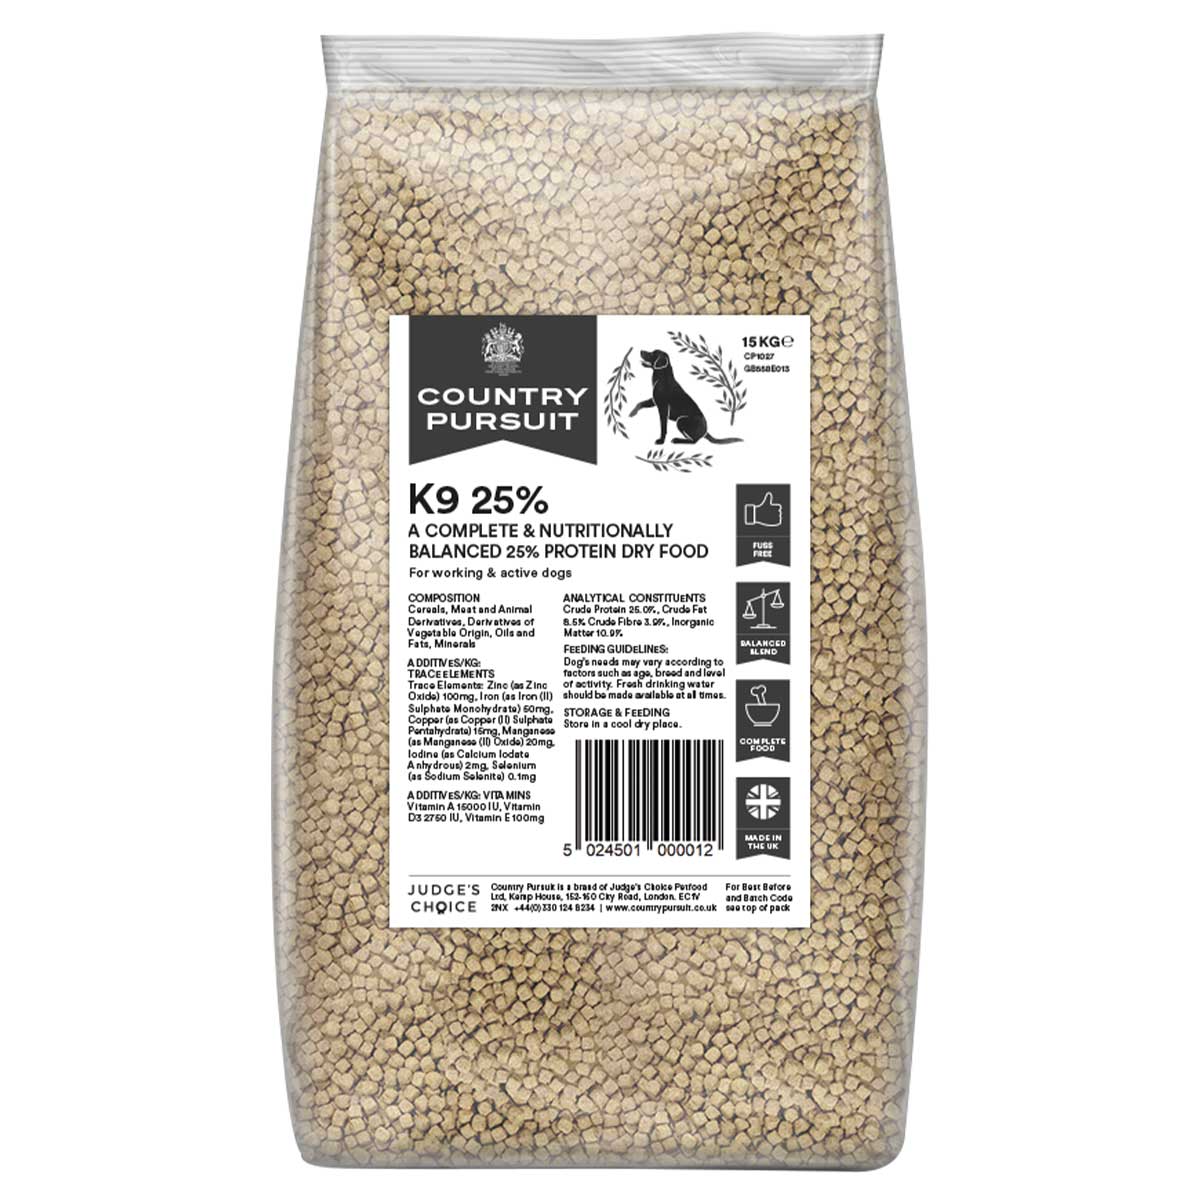 Country Pursuit K9 25% Dog Food Bag 15kg